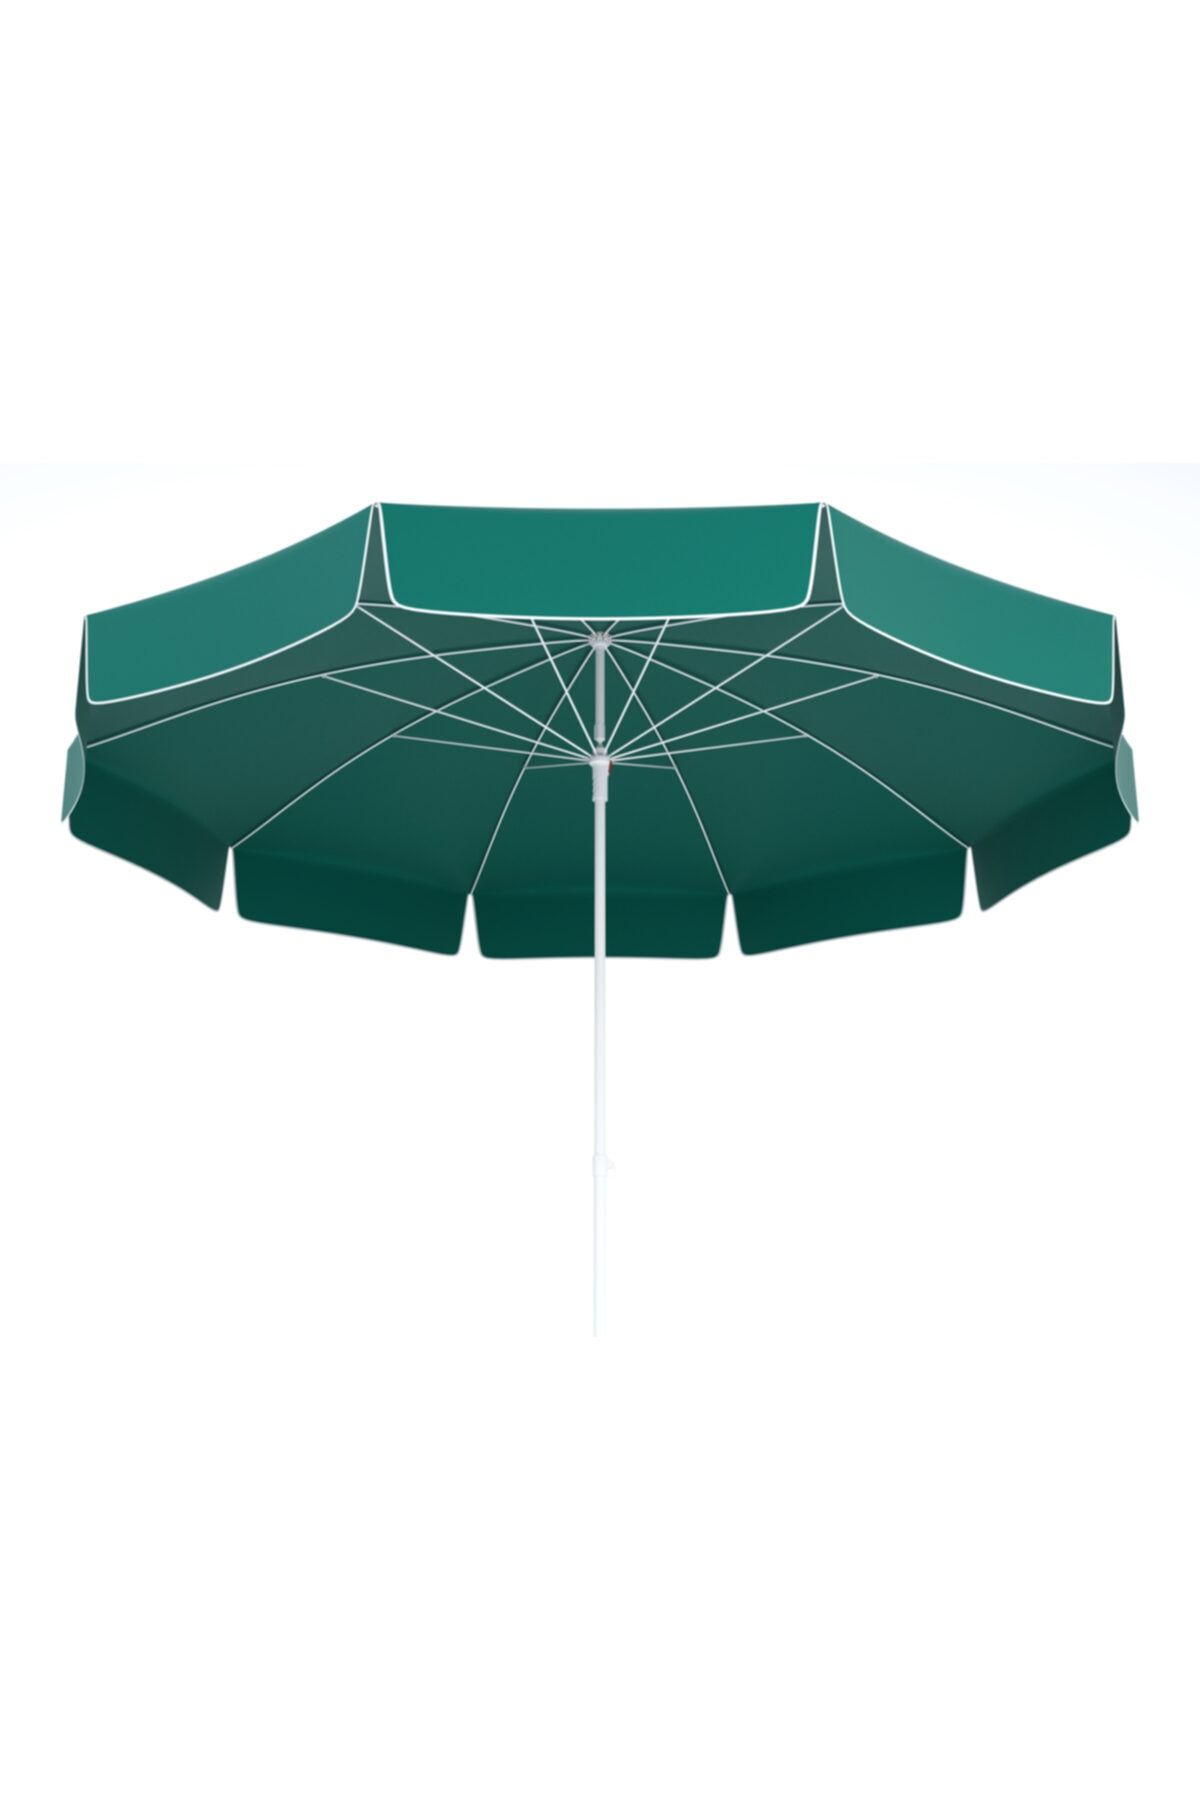 Tevalli Parasols Elite 200ø Taşıma Çantalı Polyester Plaj Şemsiye - Koyu Yeşil